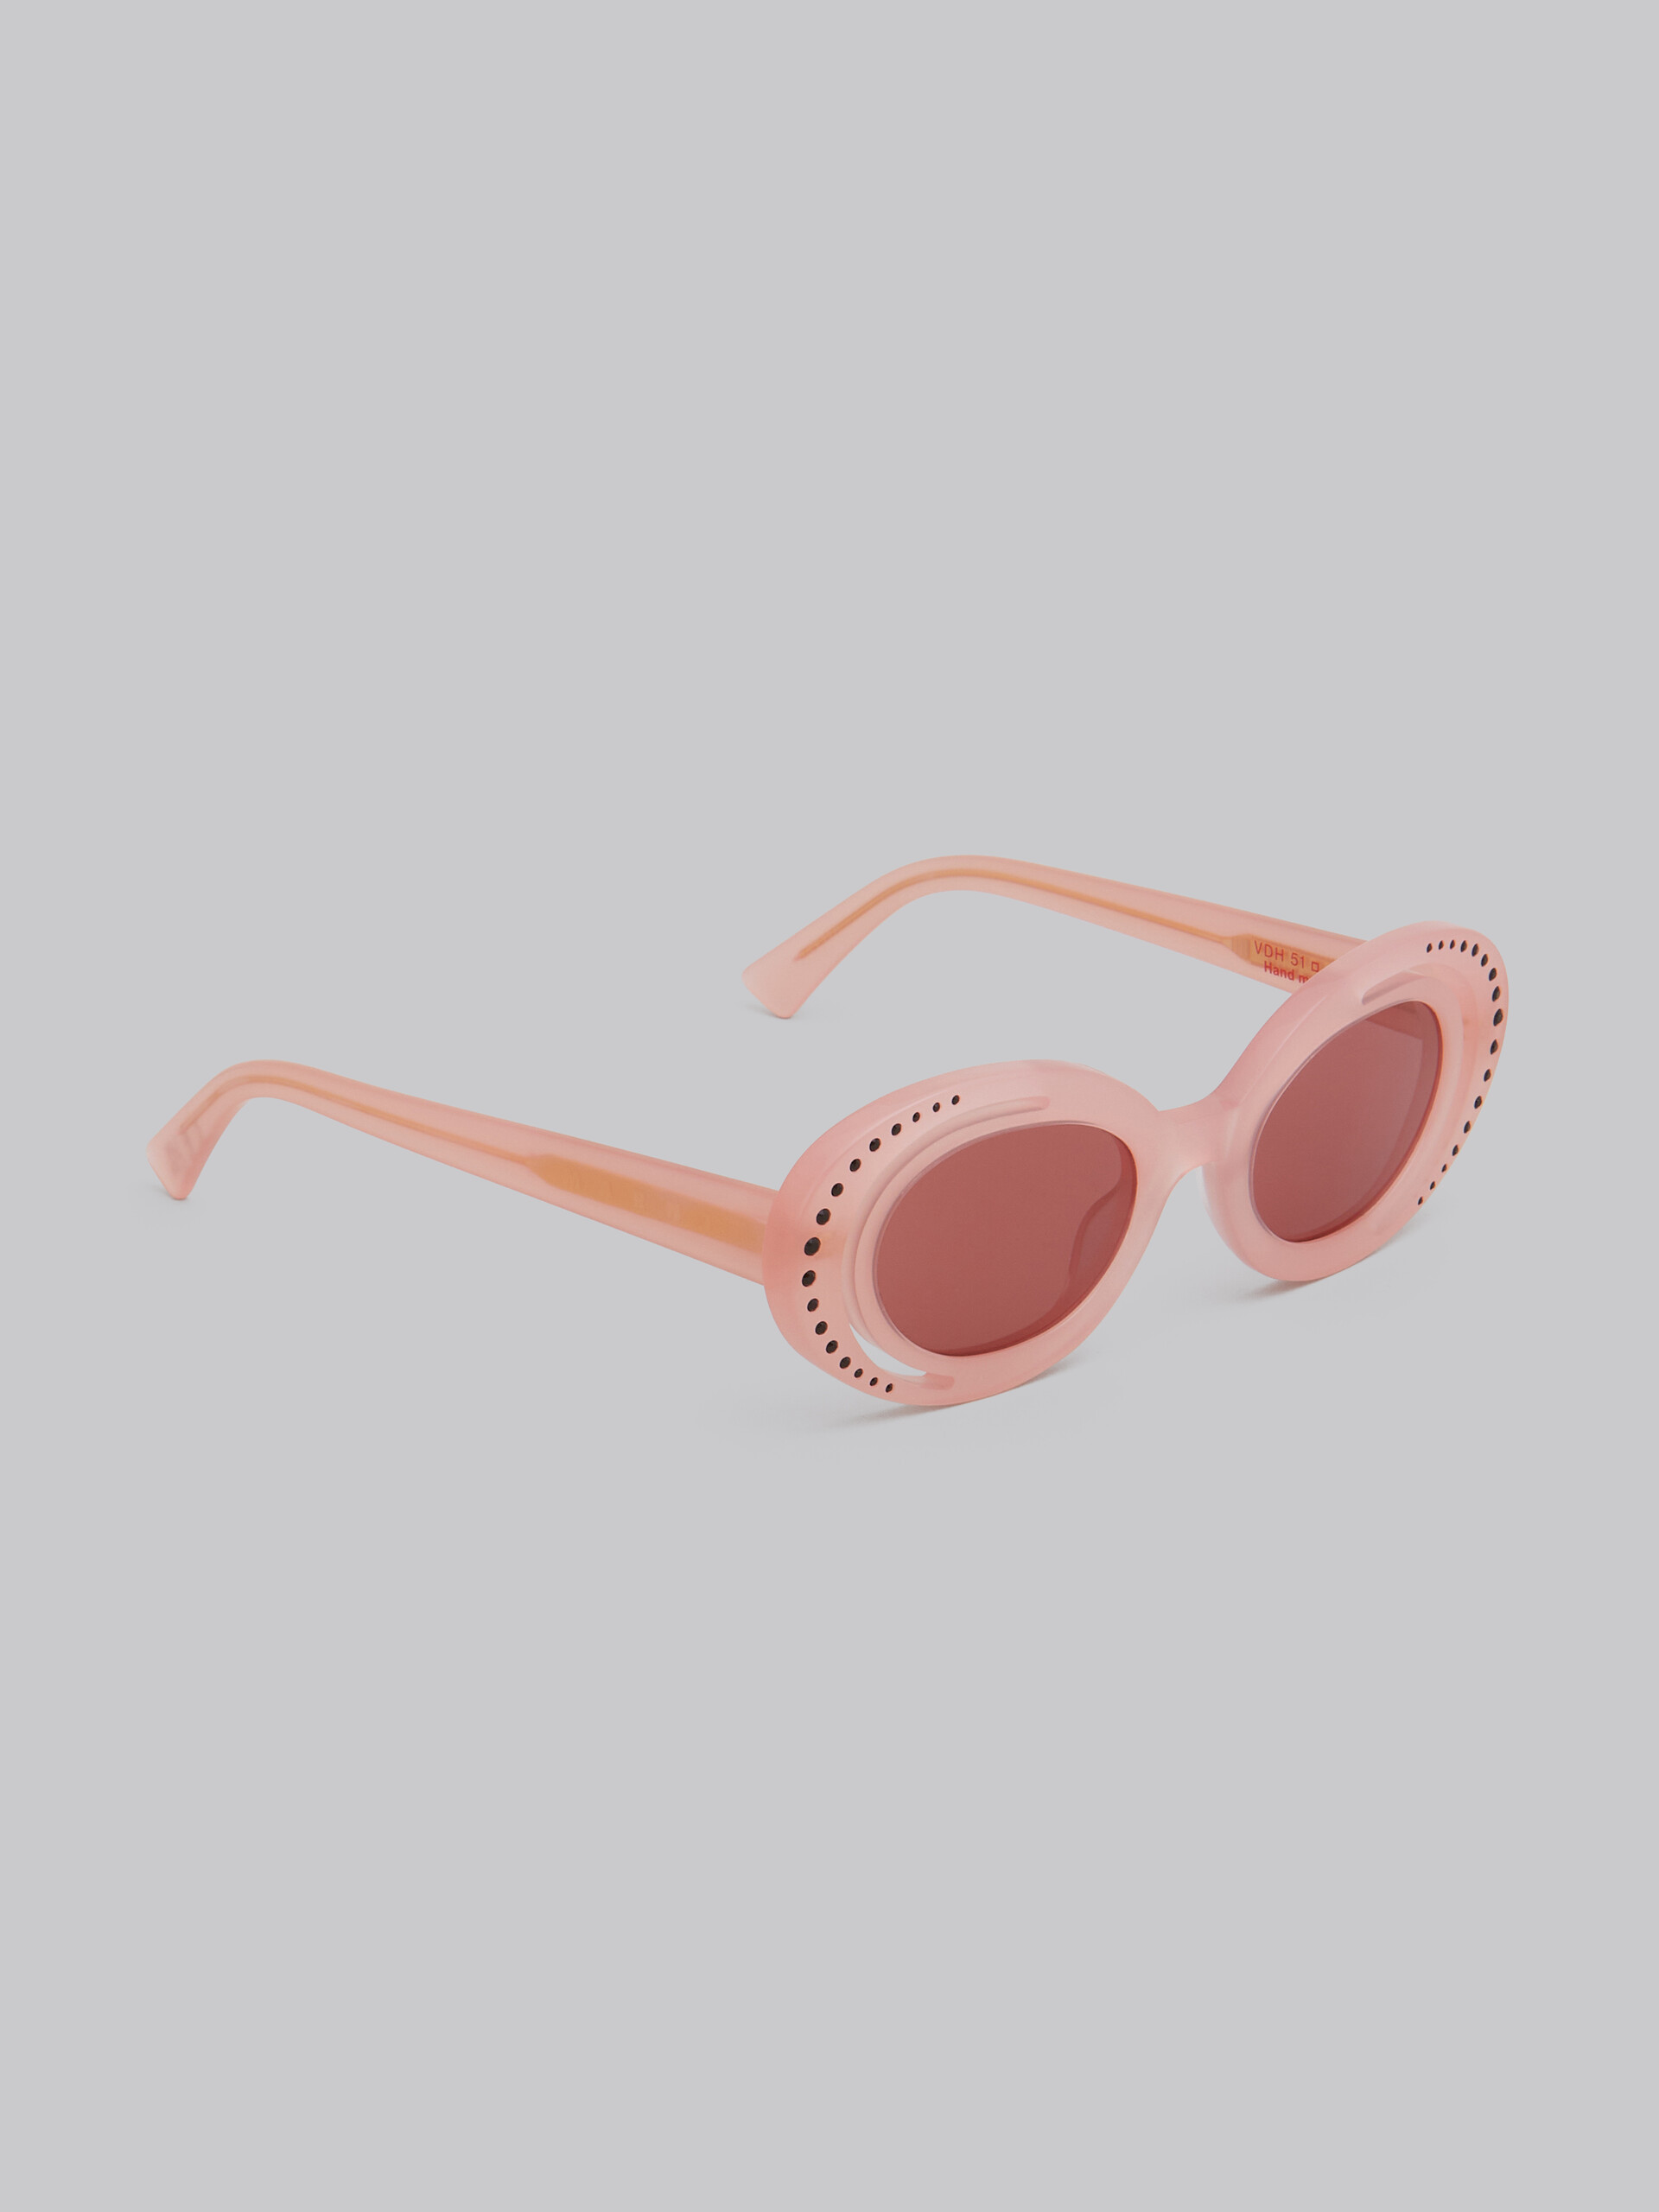 Zion Canyon powder pink sunglasses - Optical - Image 2